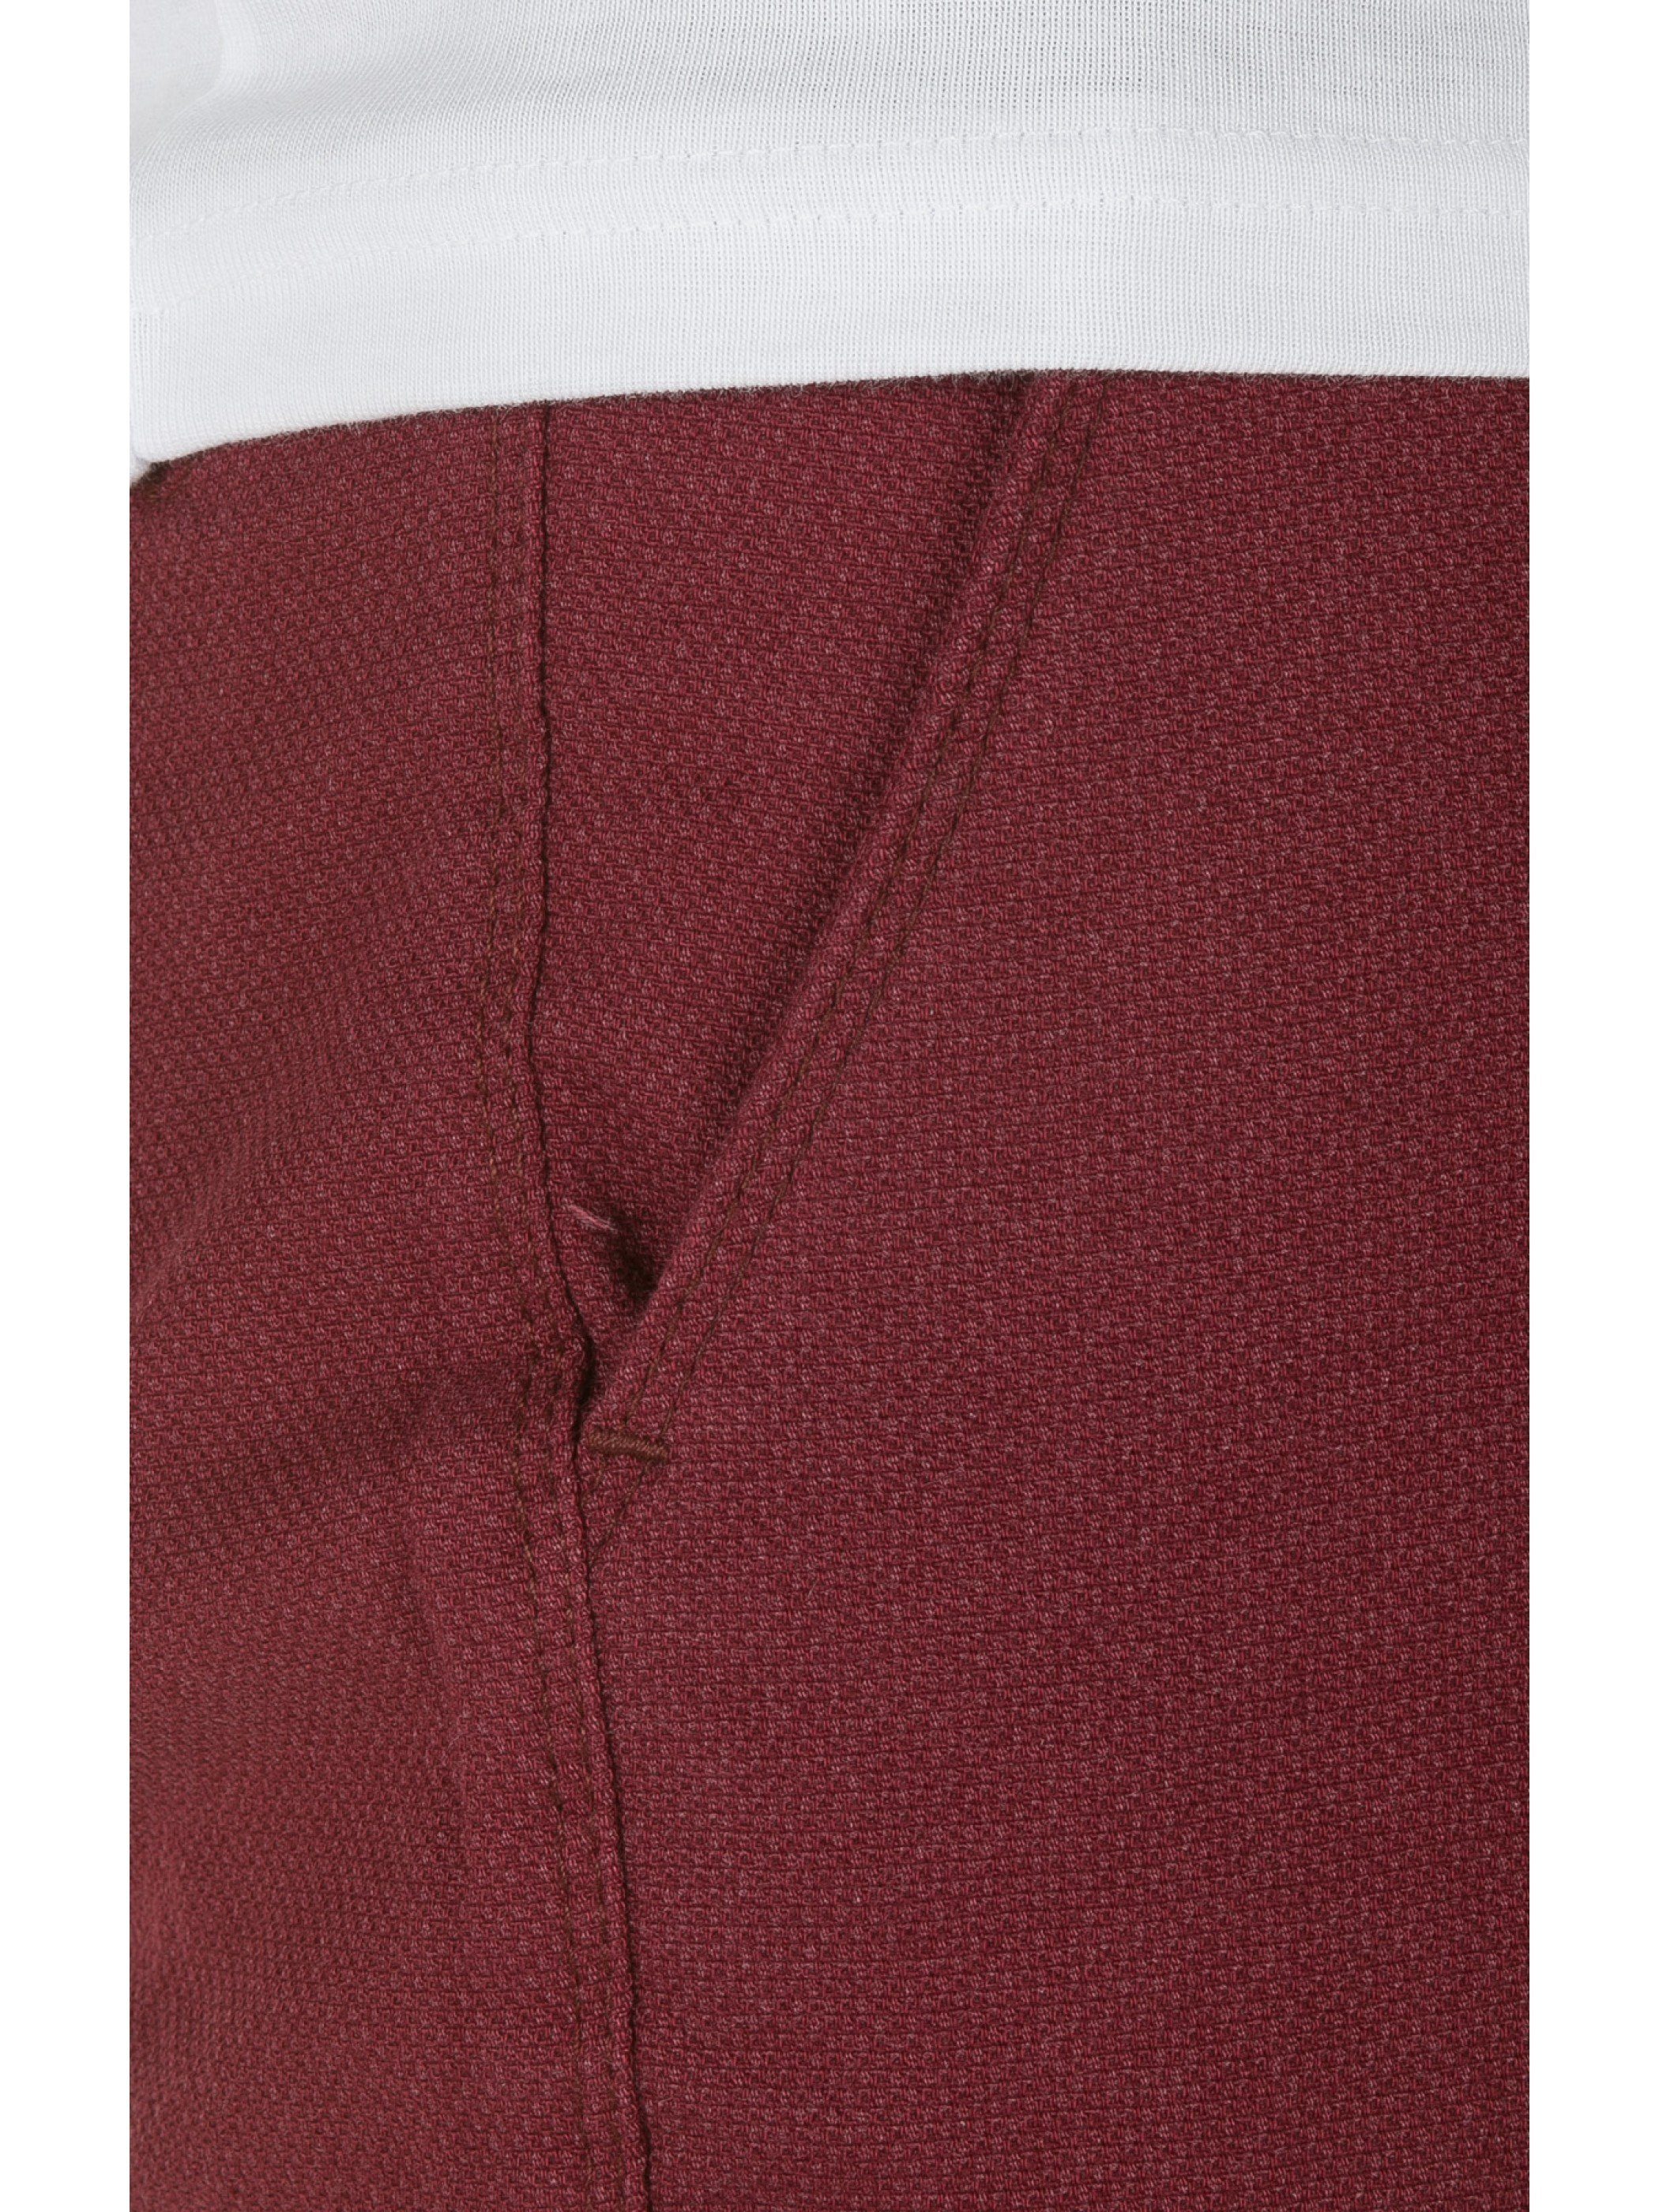 Tragekomfort hohem mit Chinohose (burgundy1617) Rengar Chino WOTEGA Pants Rot